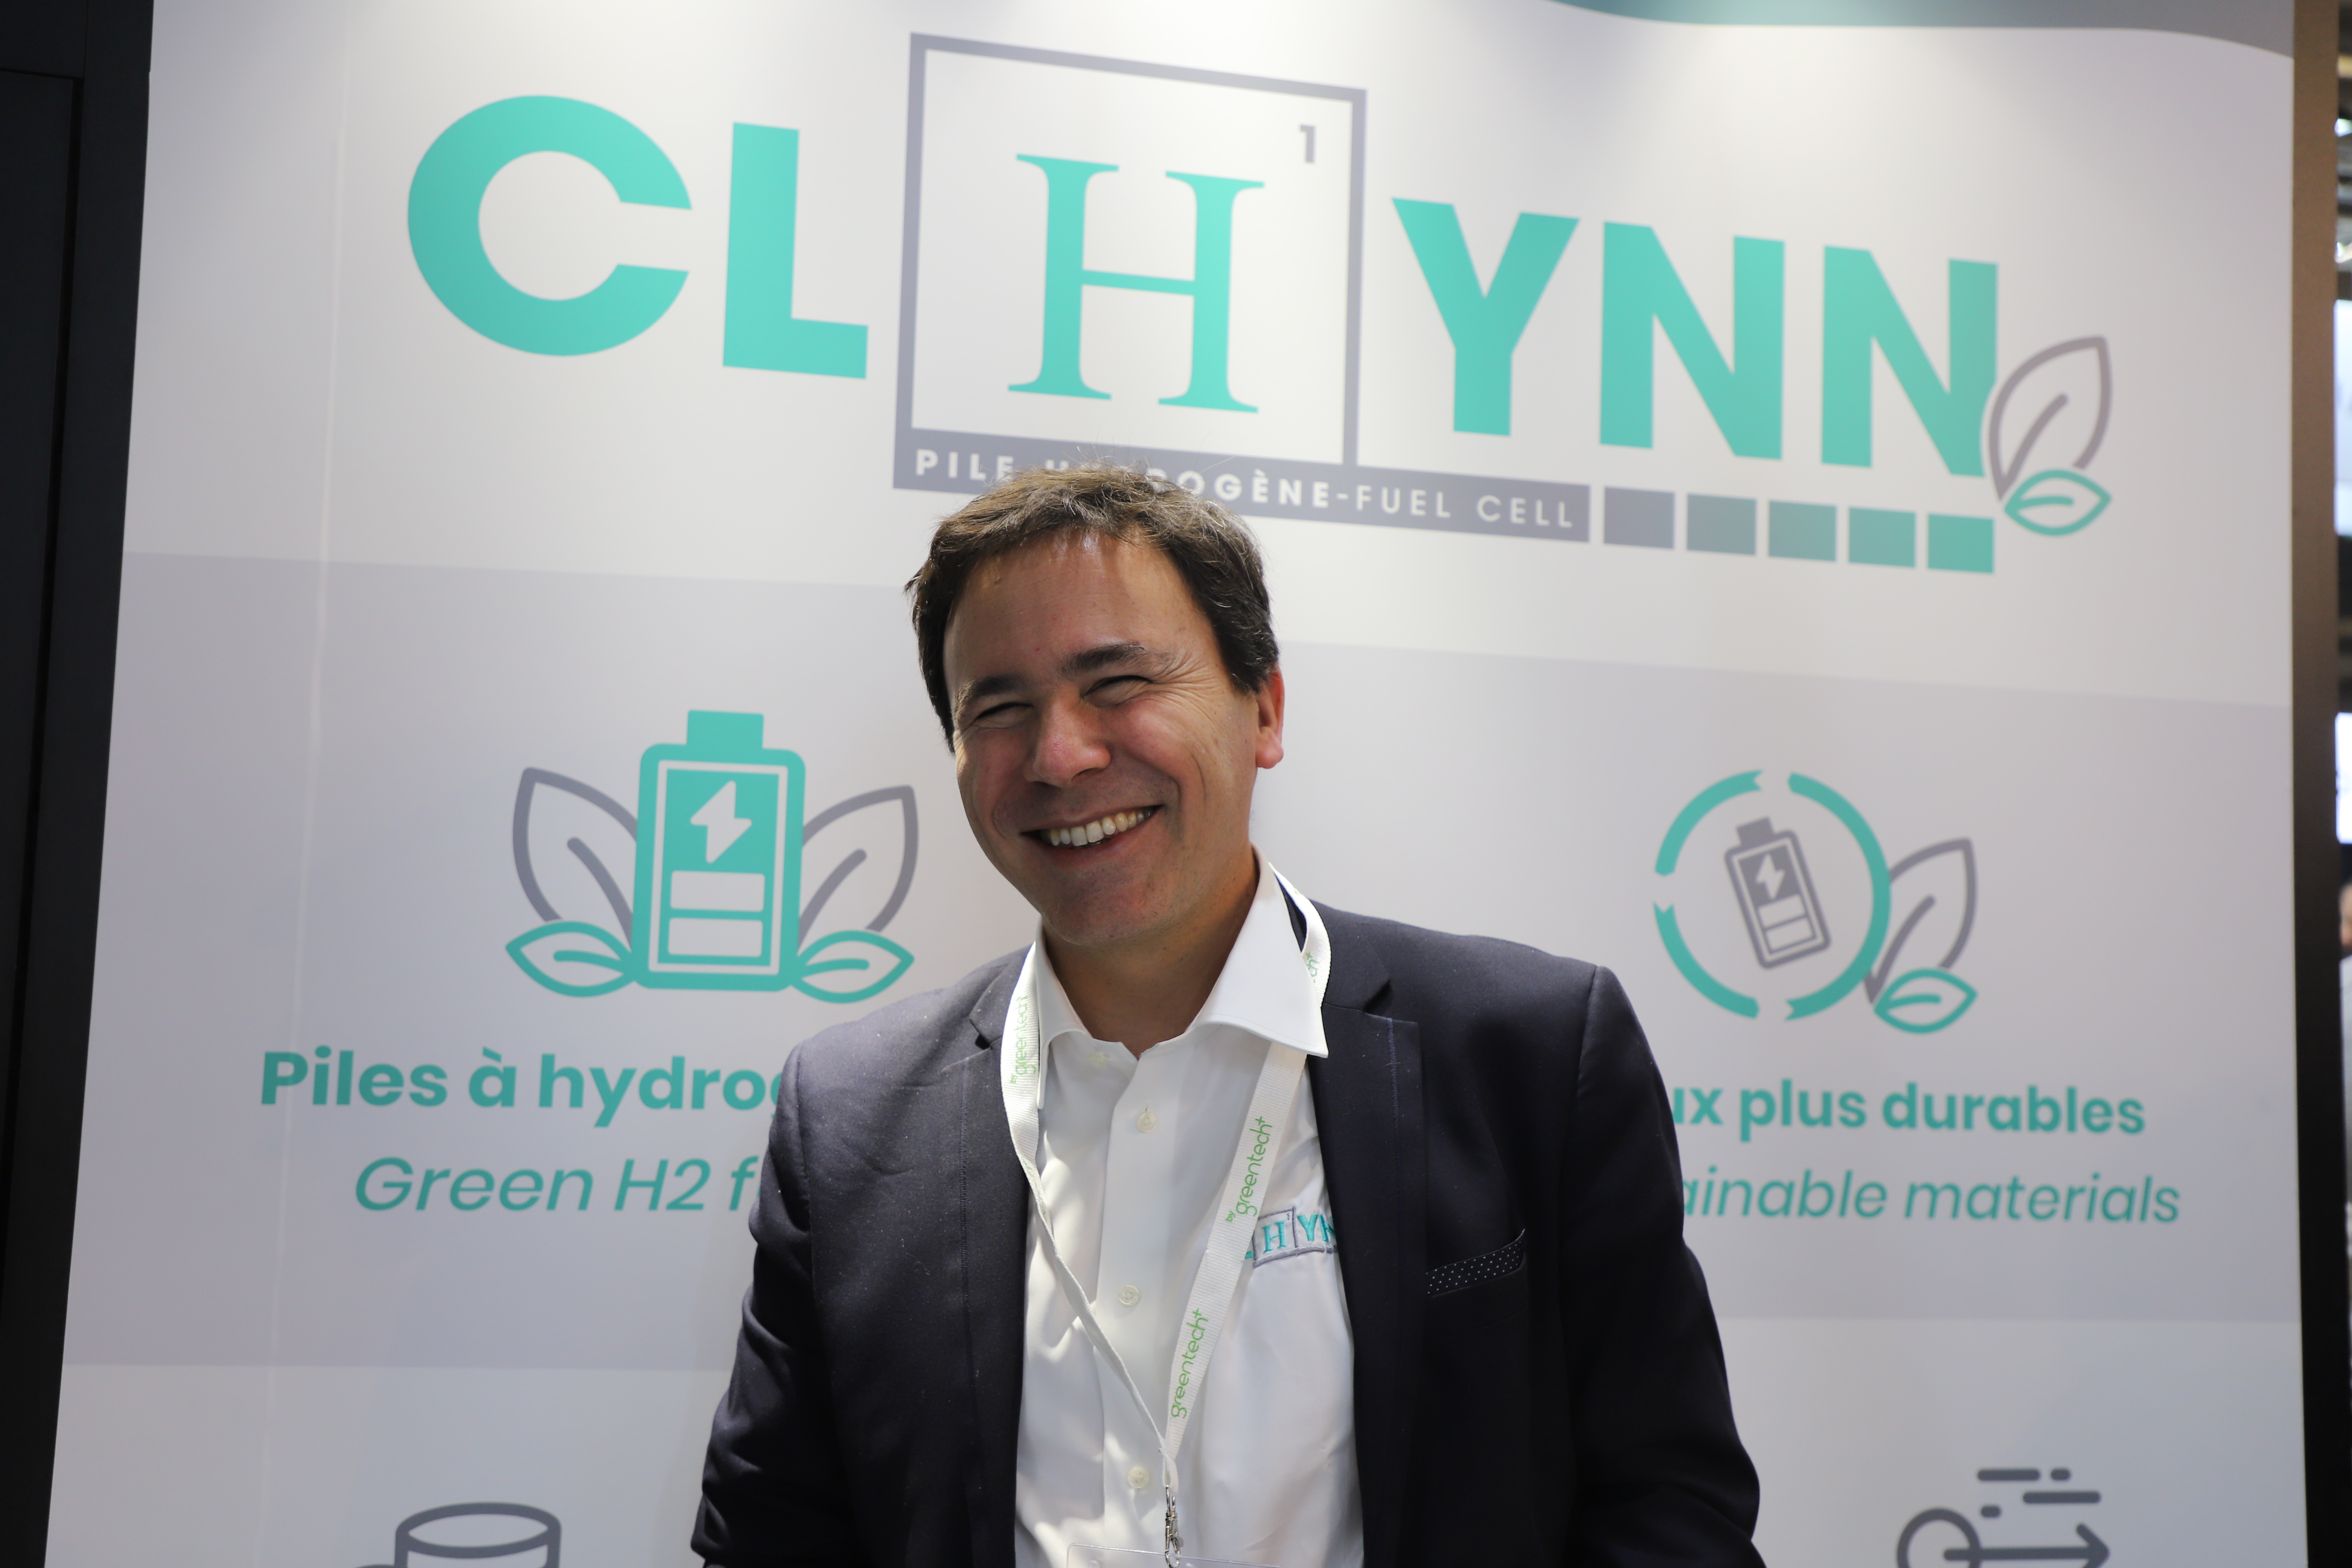 Jean-Patrick Corso de l'entreprise Clhynn espère faire connaître sa start-up basée à Besançon lors du salon dédié à l'hydrogène. Photo : Océane Lavoustet